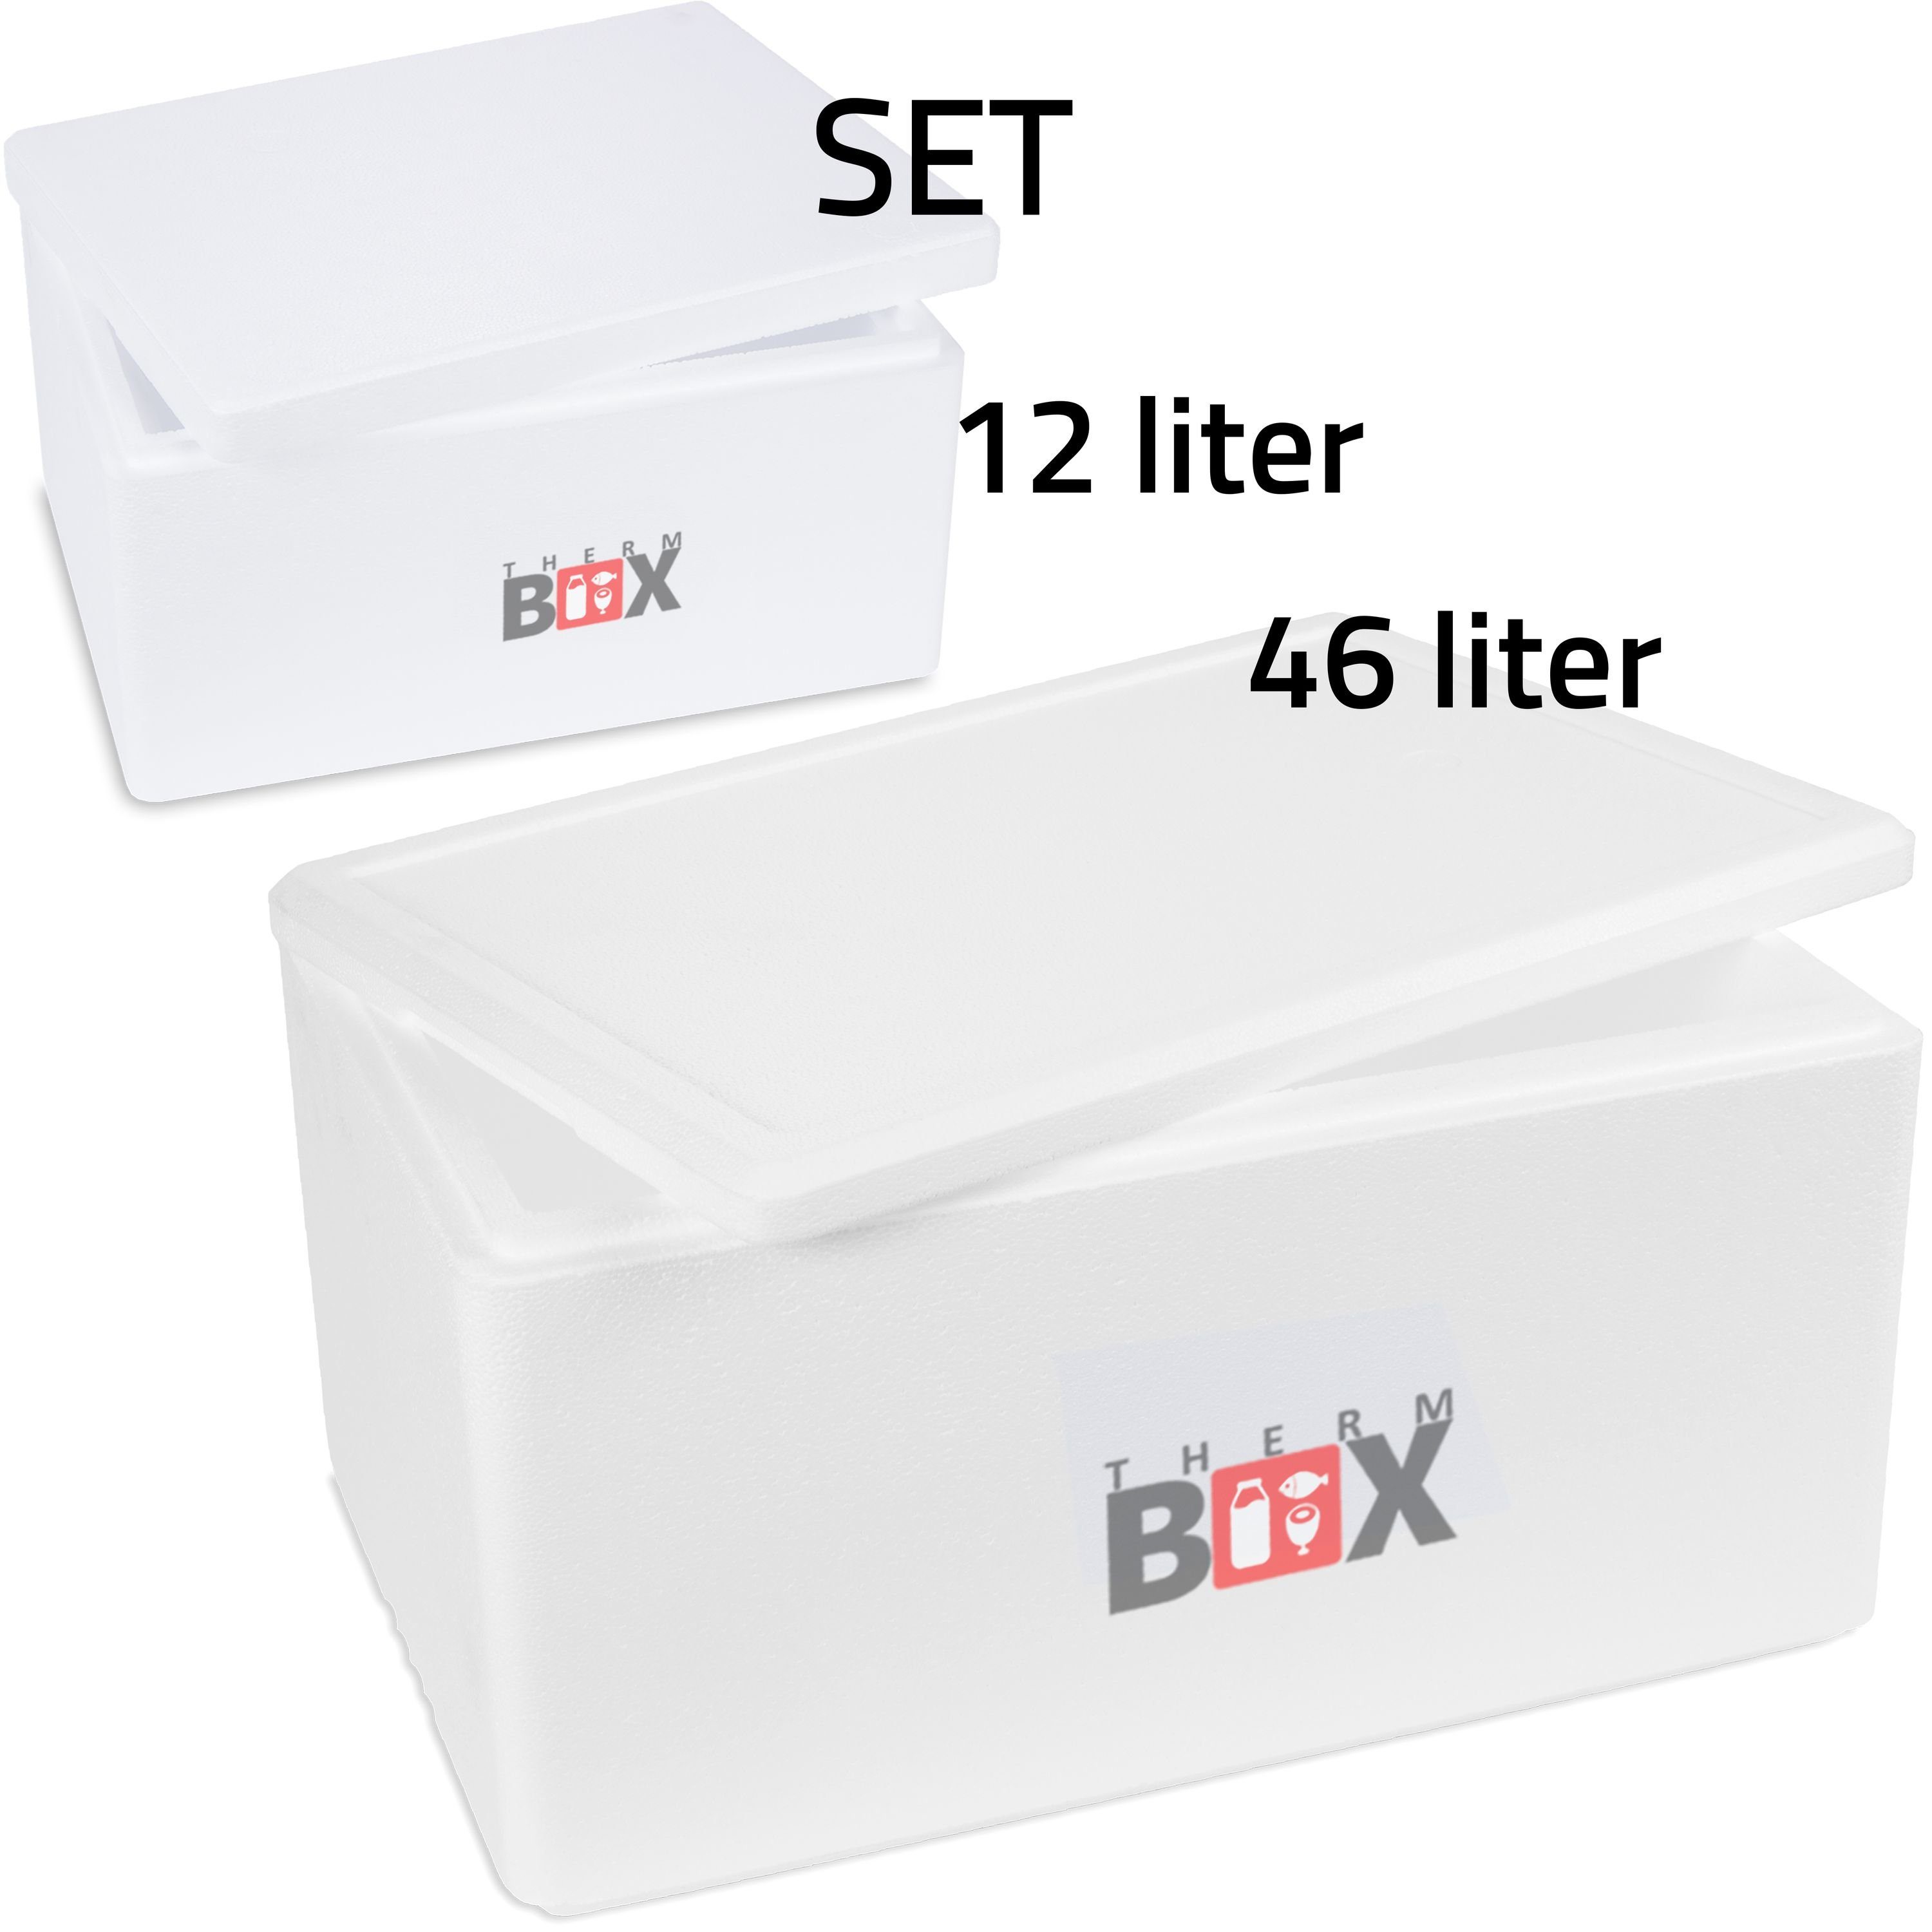 Styropor-Verdichtet, im Isolierbox 2 mit Boxen 2-tlg., Getränke (1, Set THERM-BOX Thermobehälter 46L für Deckel Essen Thermobox & Thermobox Kühlbox Karton), & Wiederverwendbar Warmhaltebox, 12L Styroporbox